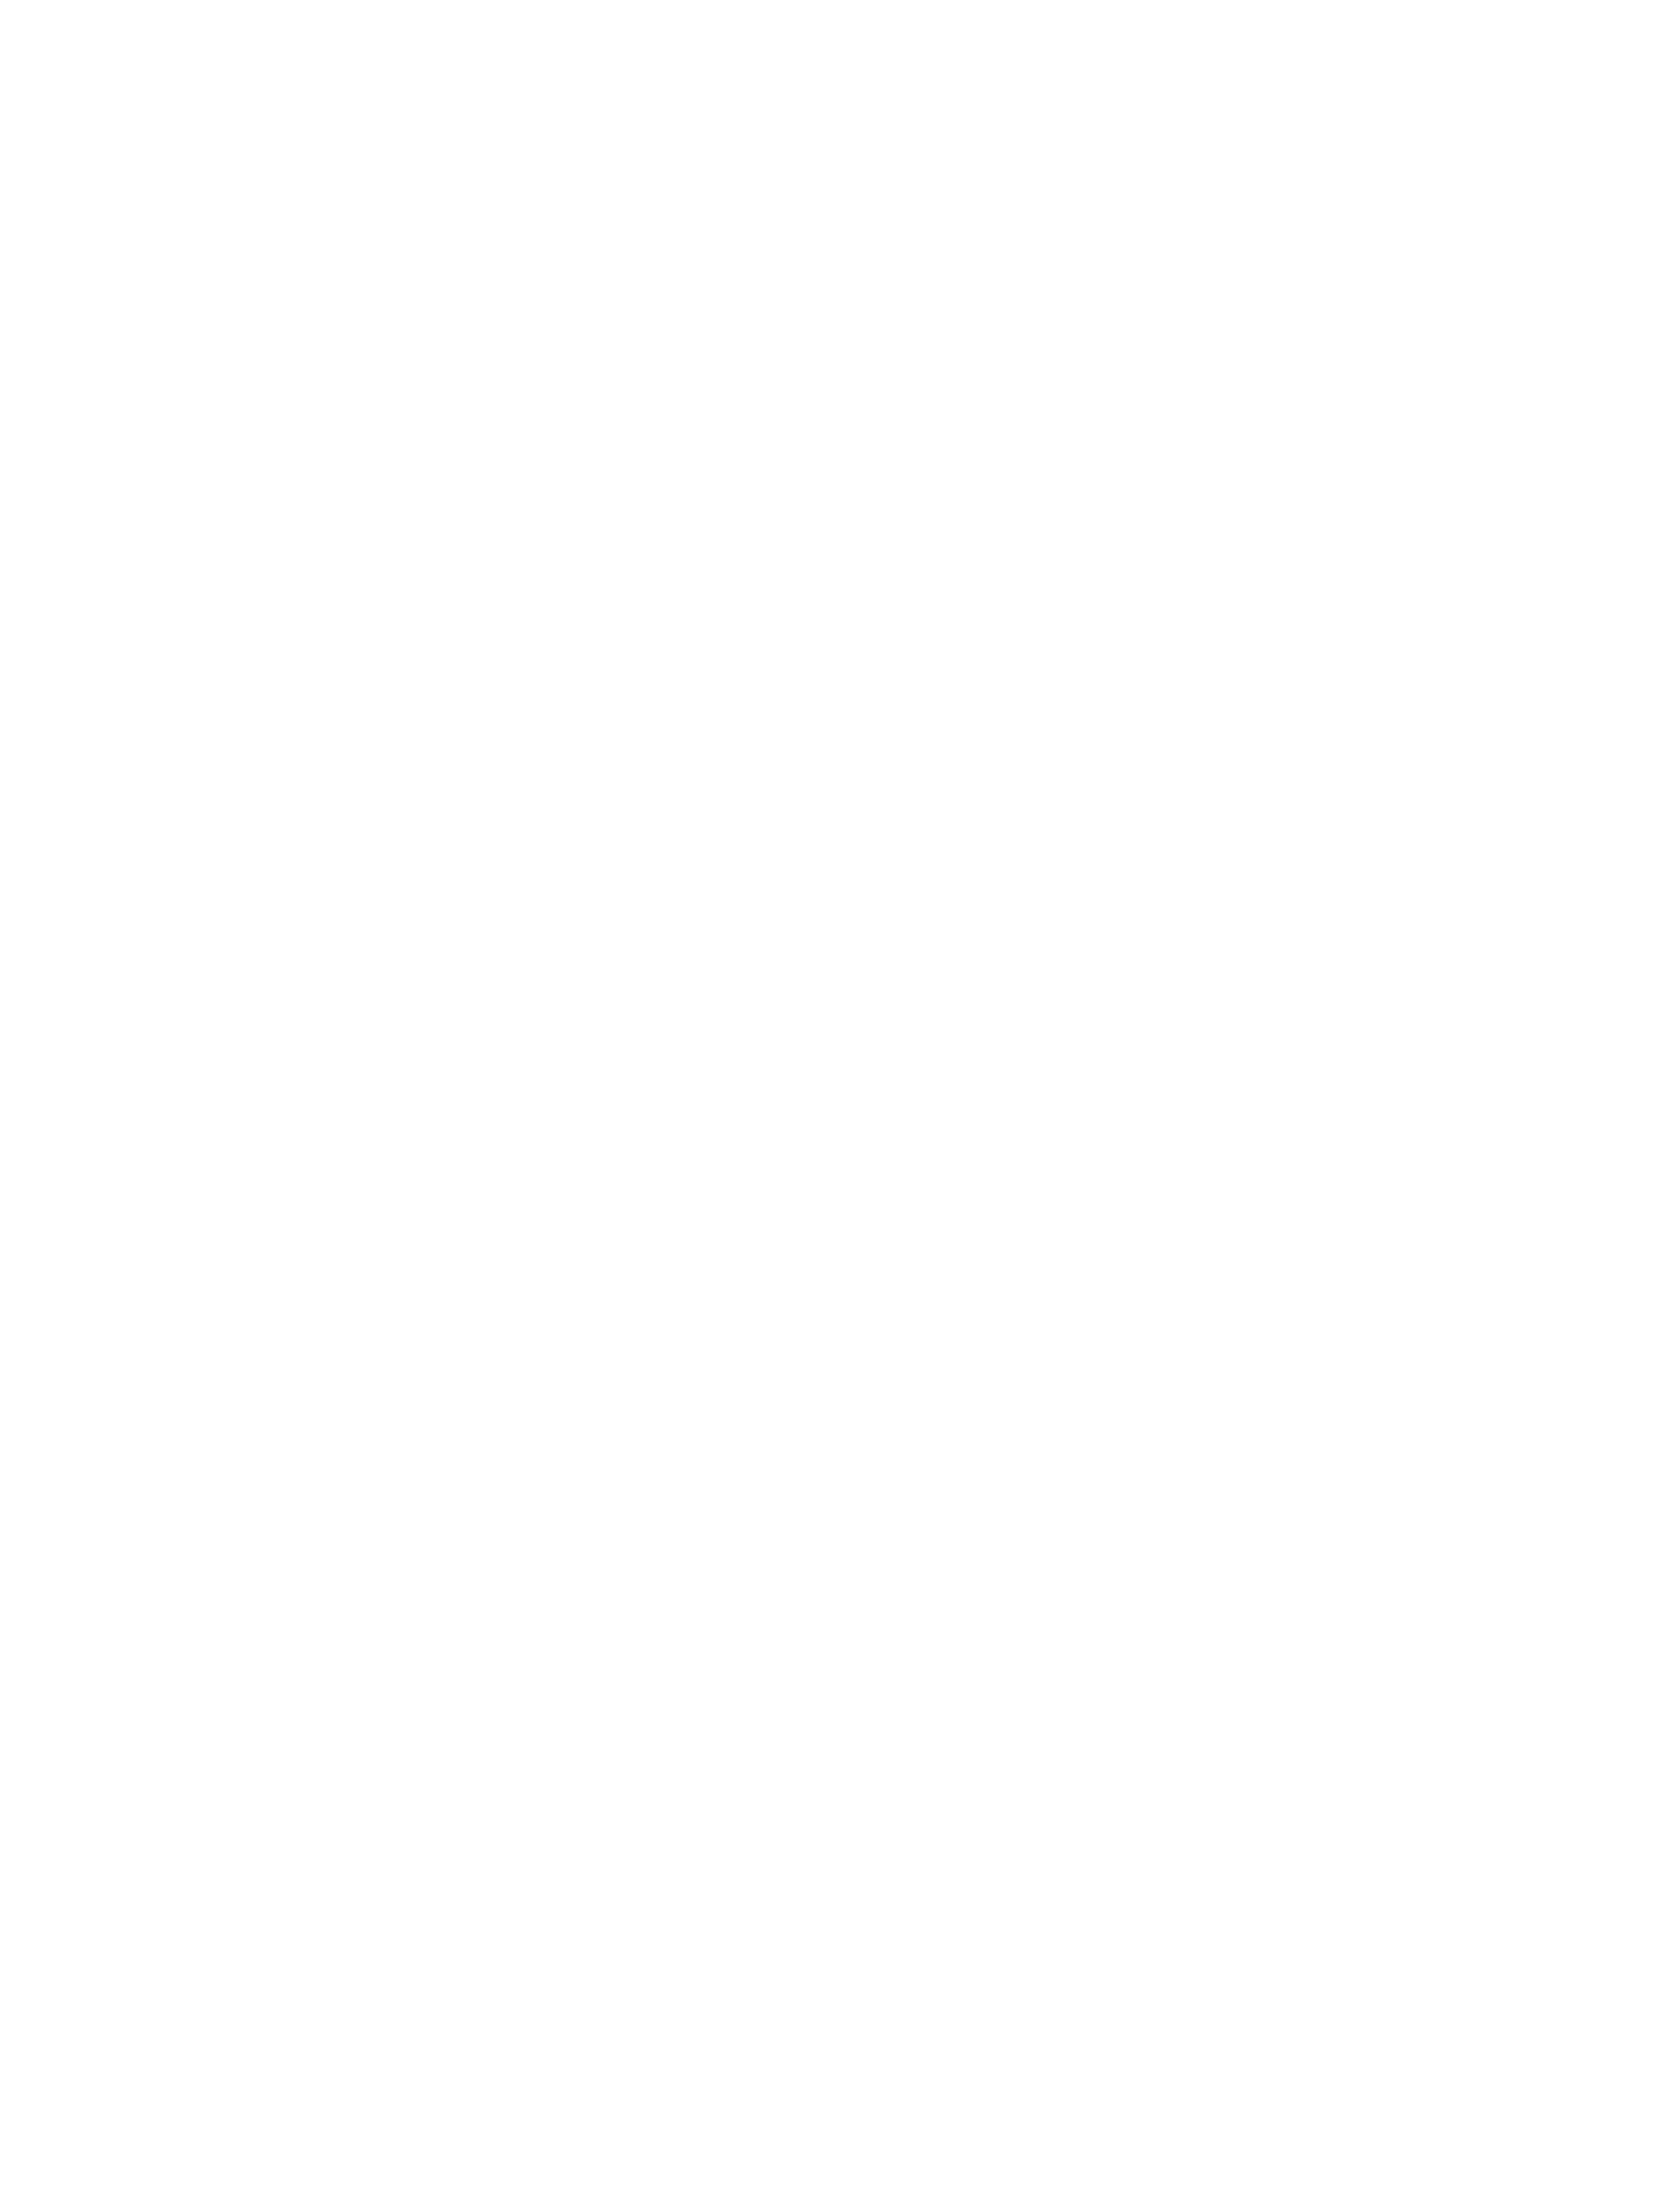 La French Tech Alpes Chambéry